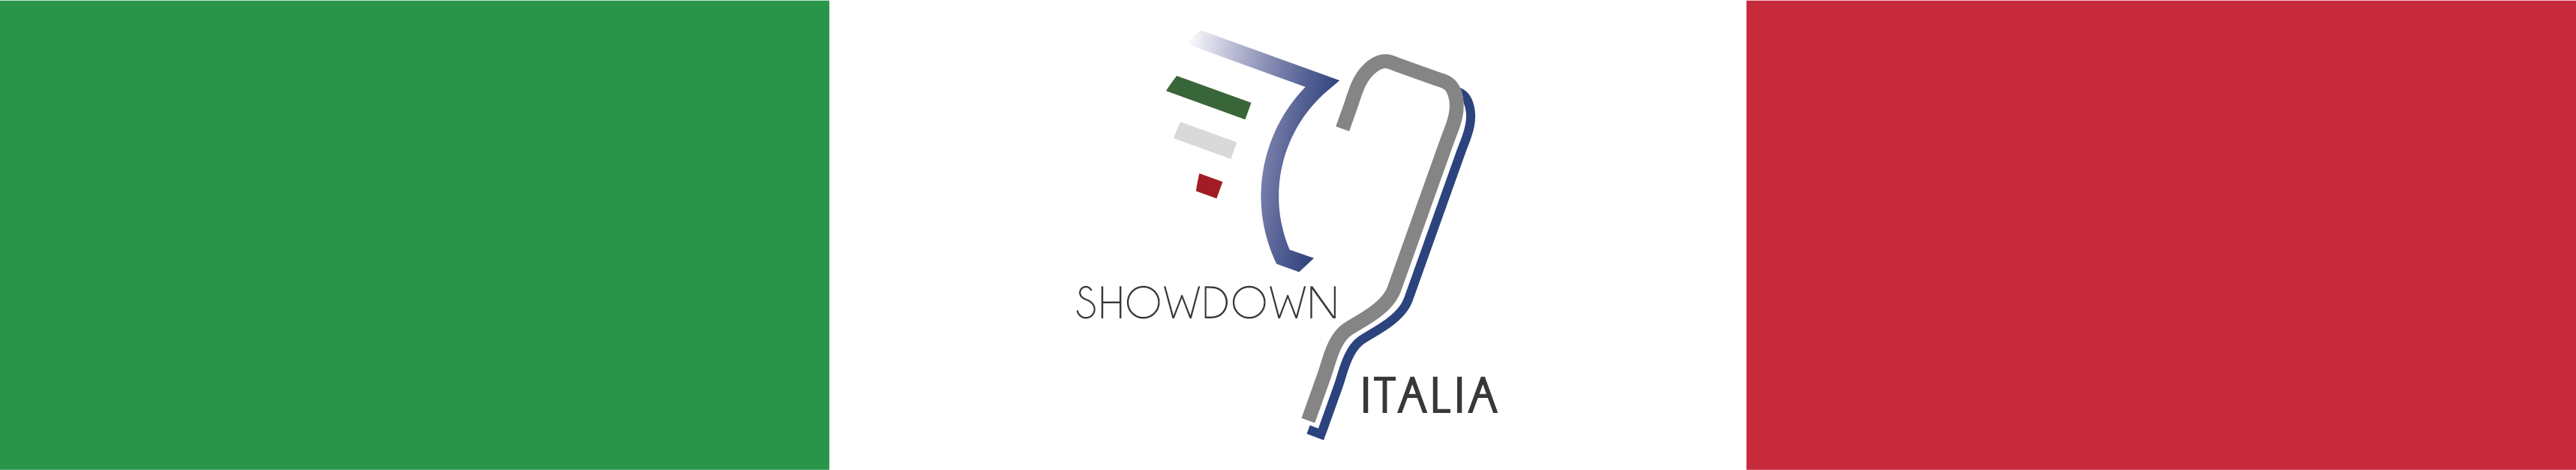 Tricolore italiano con al centro una paletta da Showdown alata e la scritta Showdown Italia .